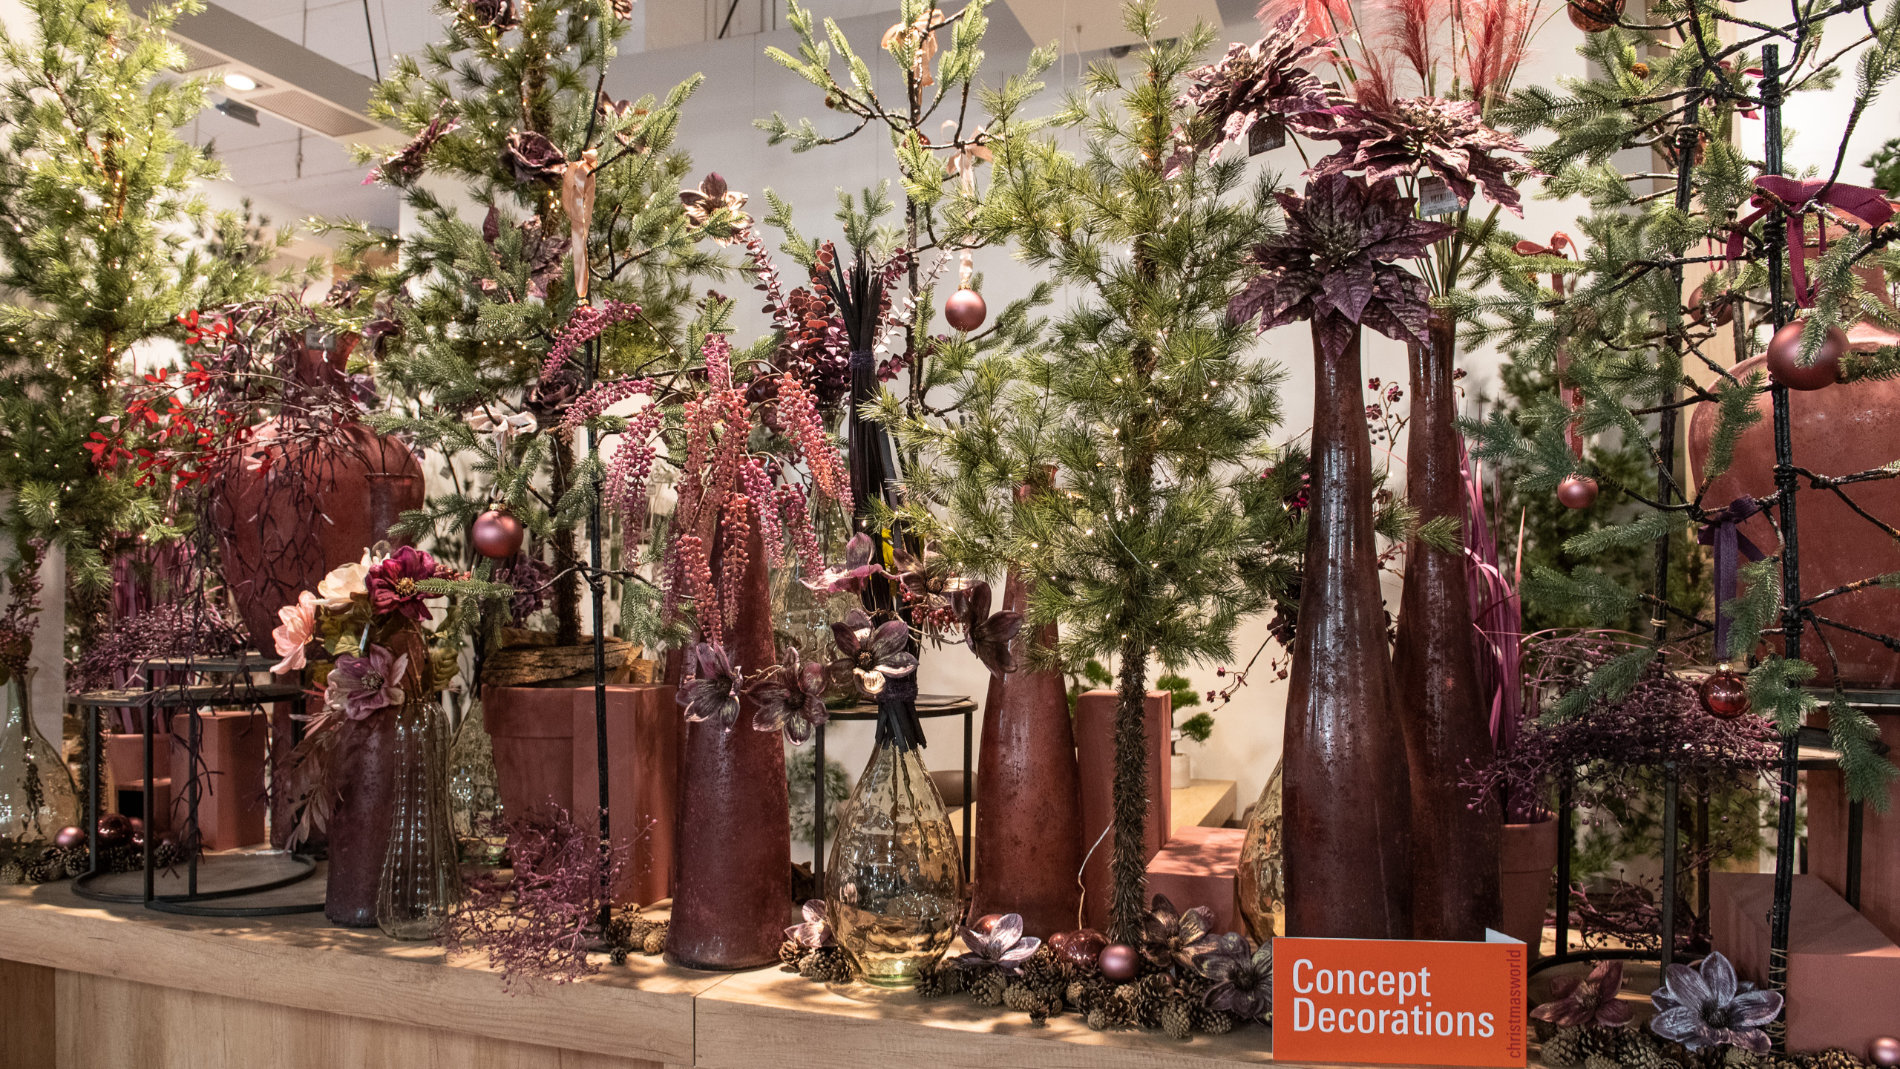 Christmasworld Concept Decoration: Blumen in Vasen